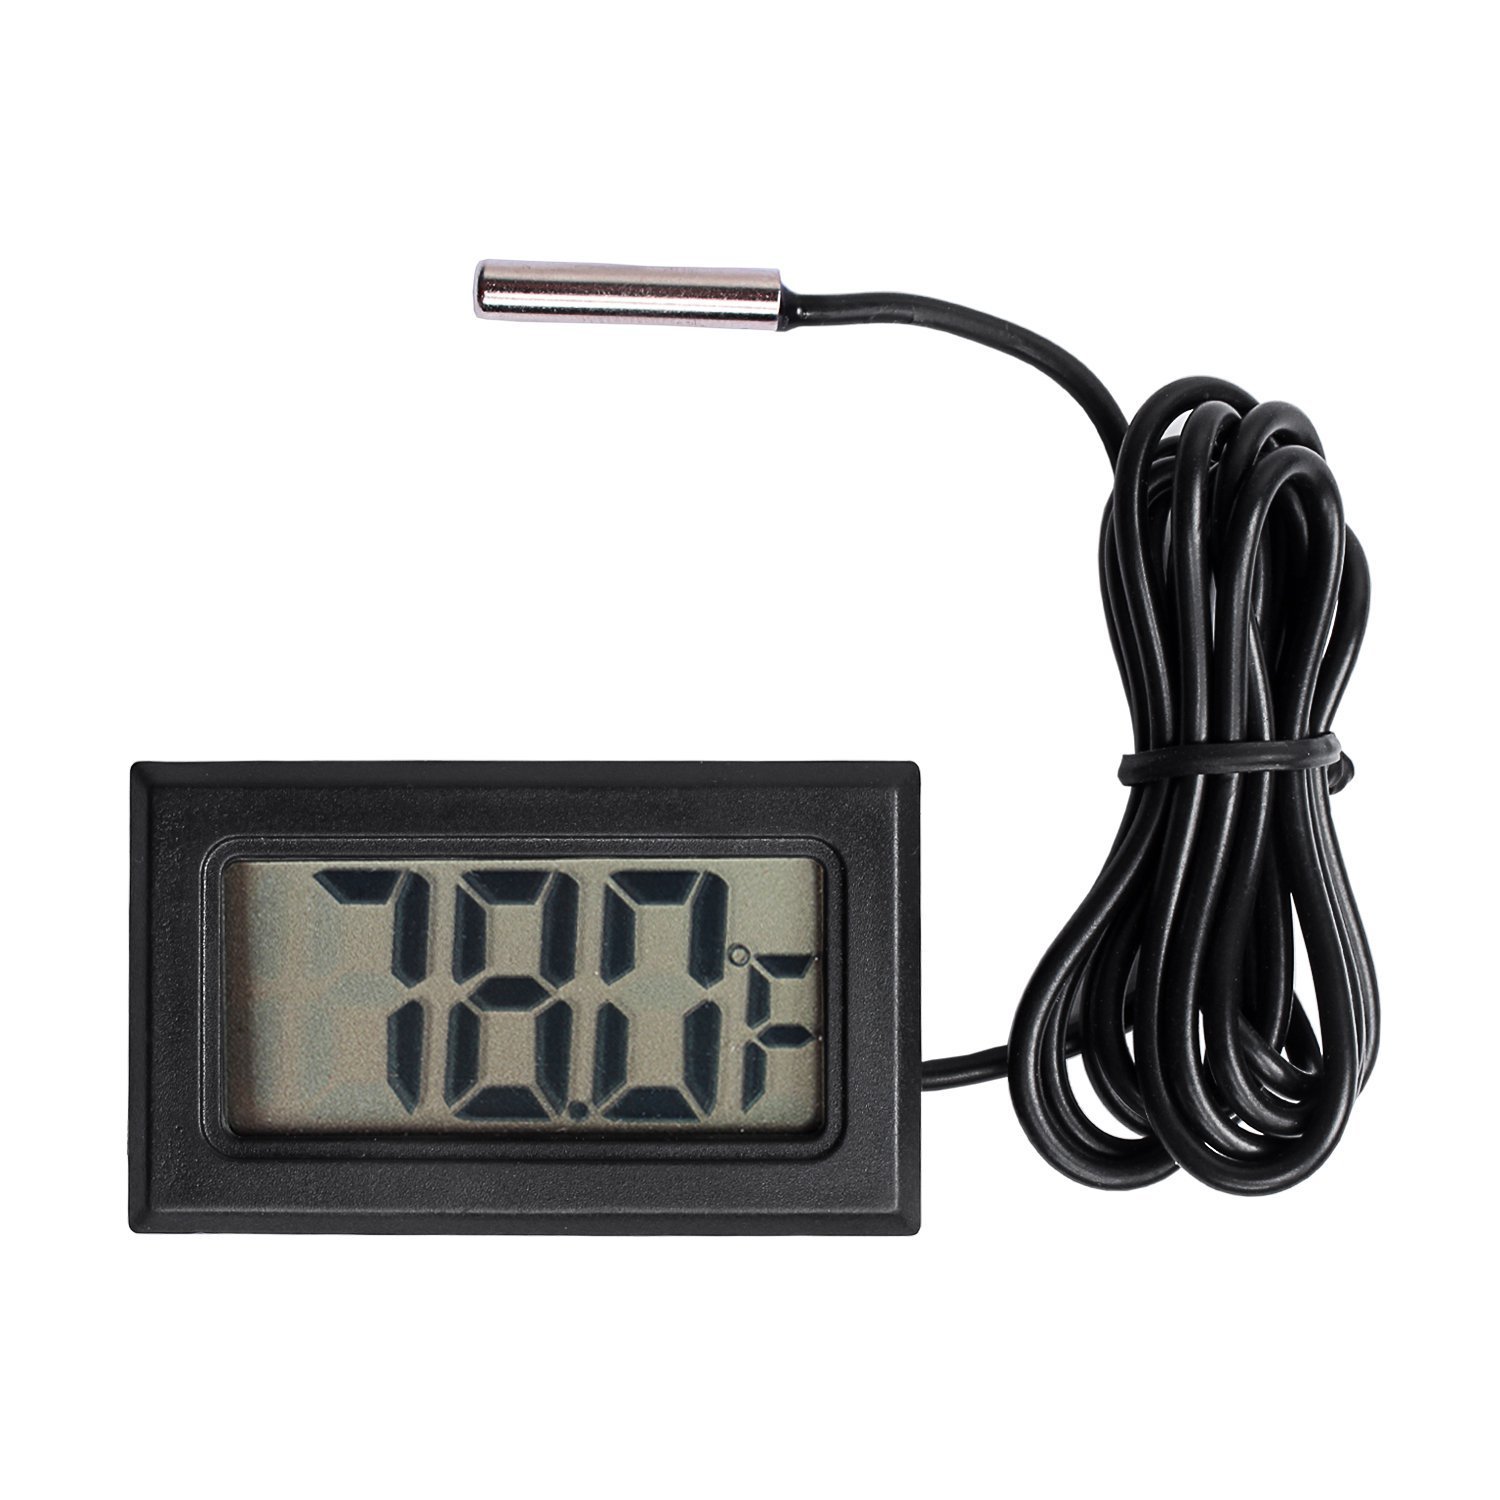 Qooltek Digital LCD Thermometer Temperature Gauge Aquarium